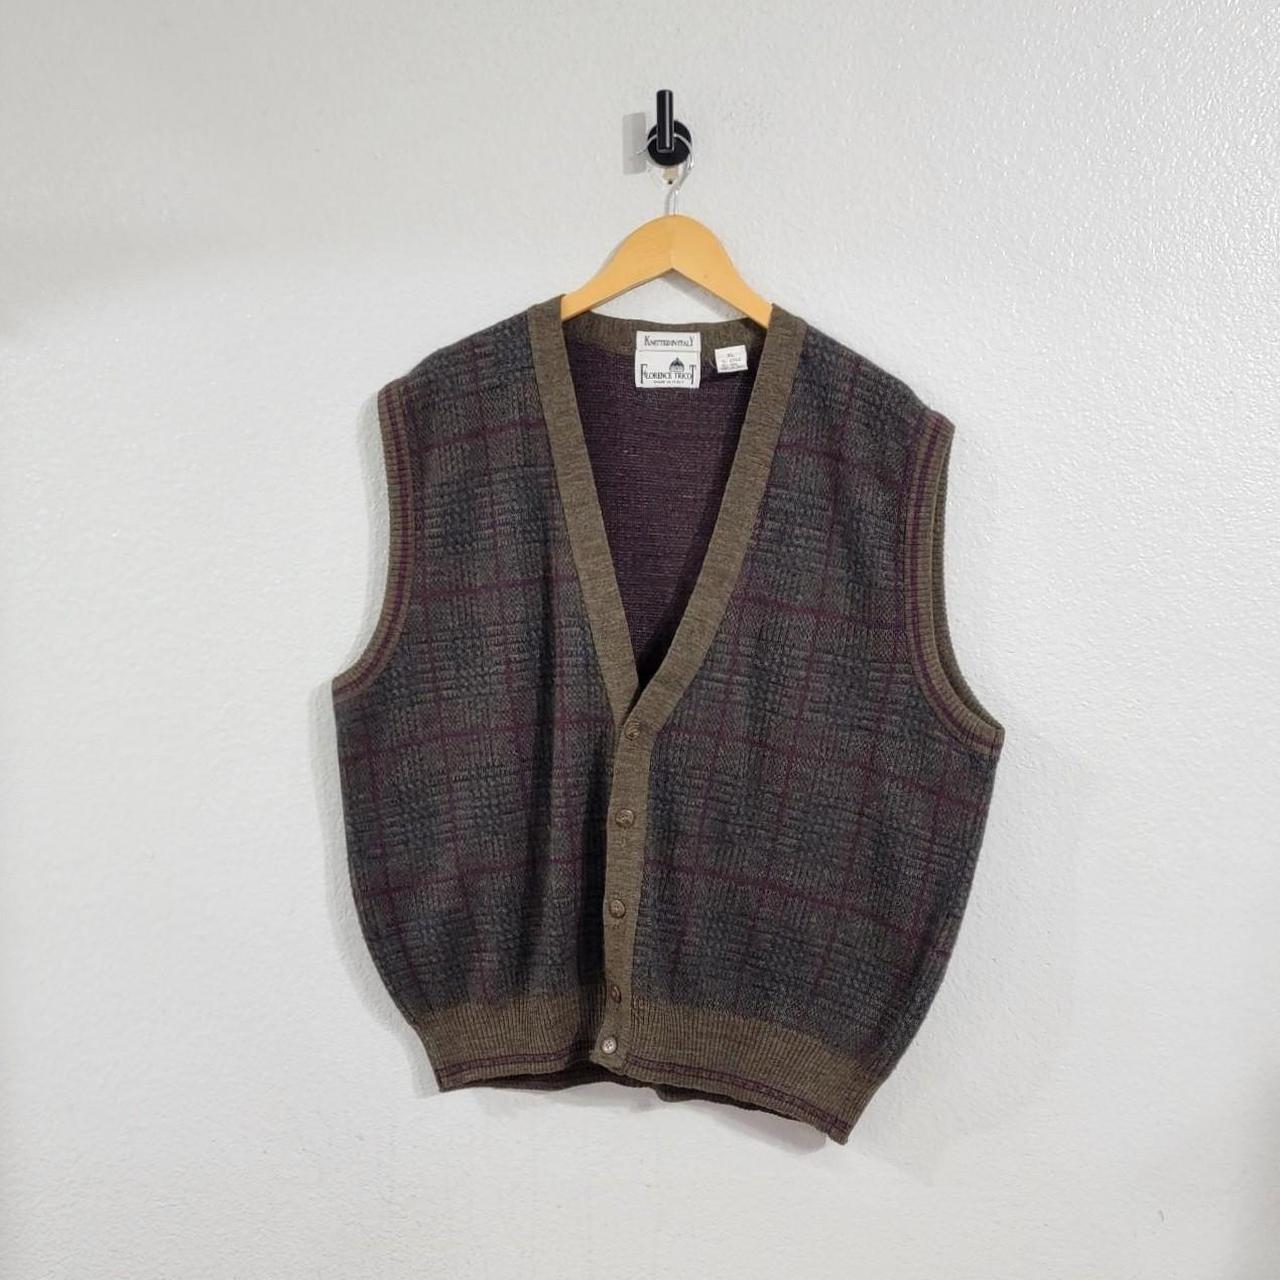 Vintage Knitted Essential Cardigan Vest - Men's... - Depop